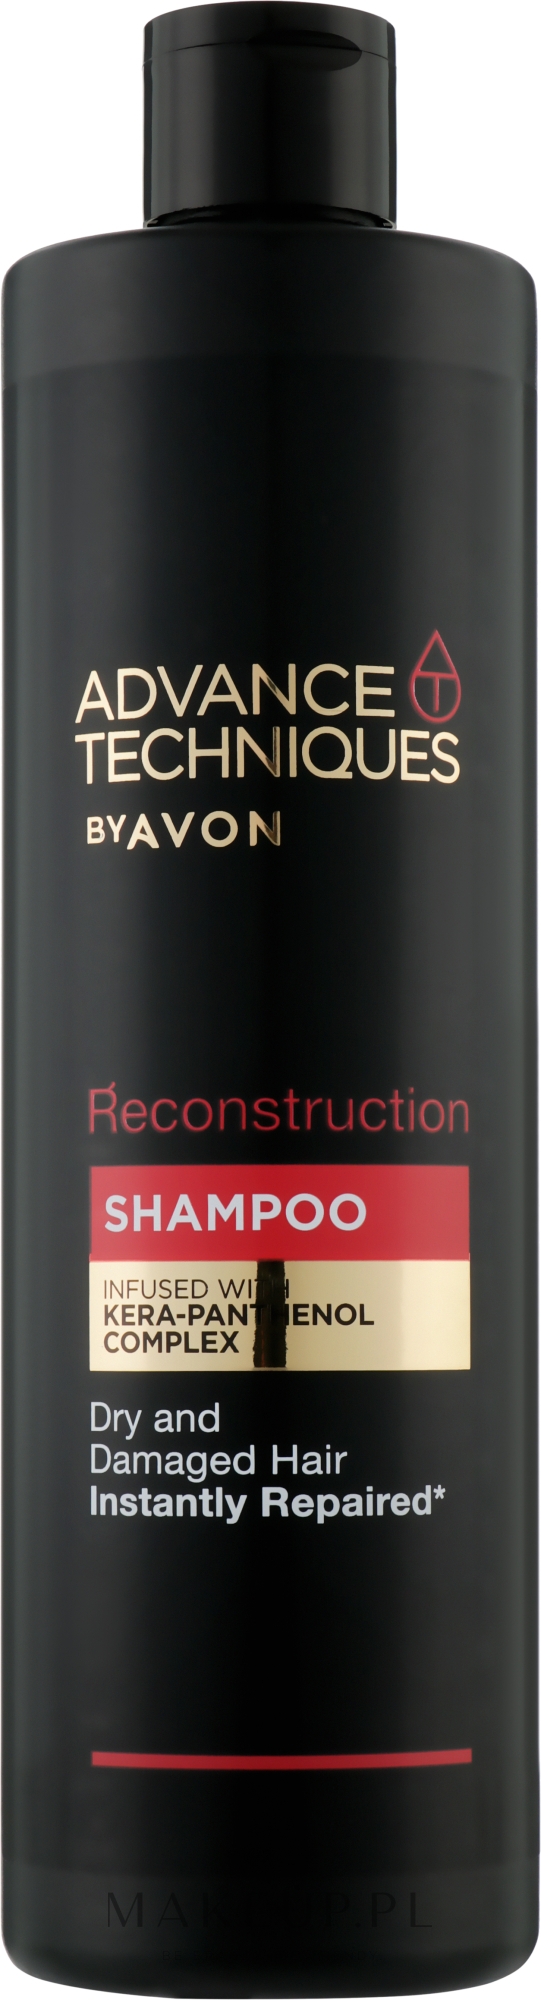 szampon do włosów farbowanych avon